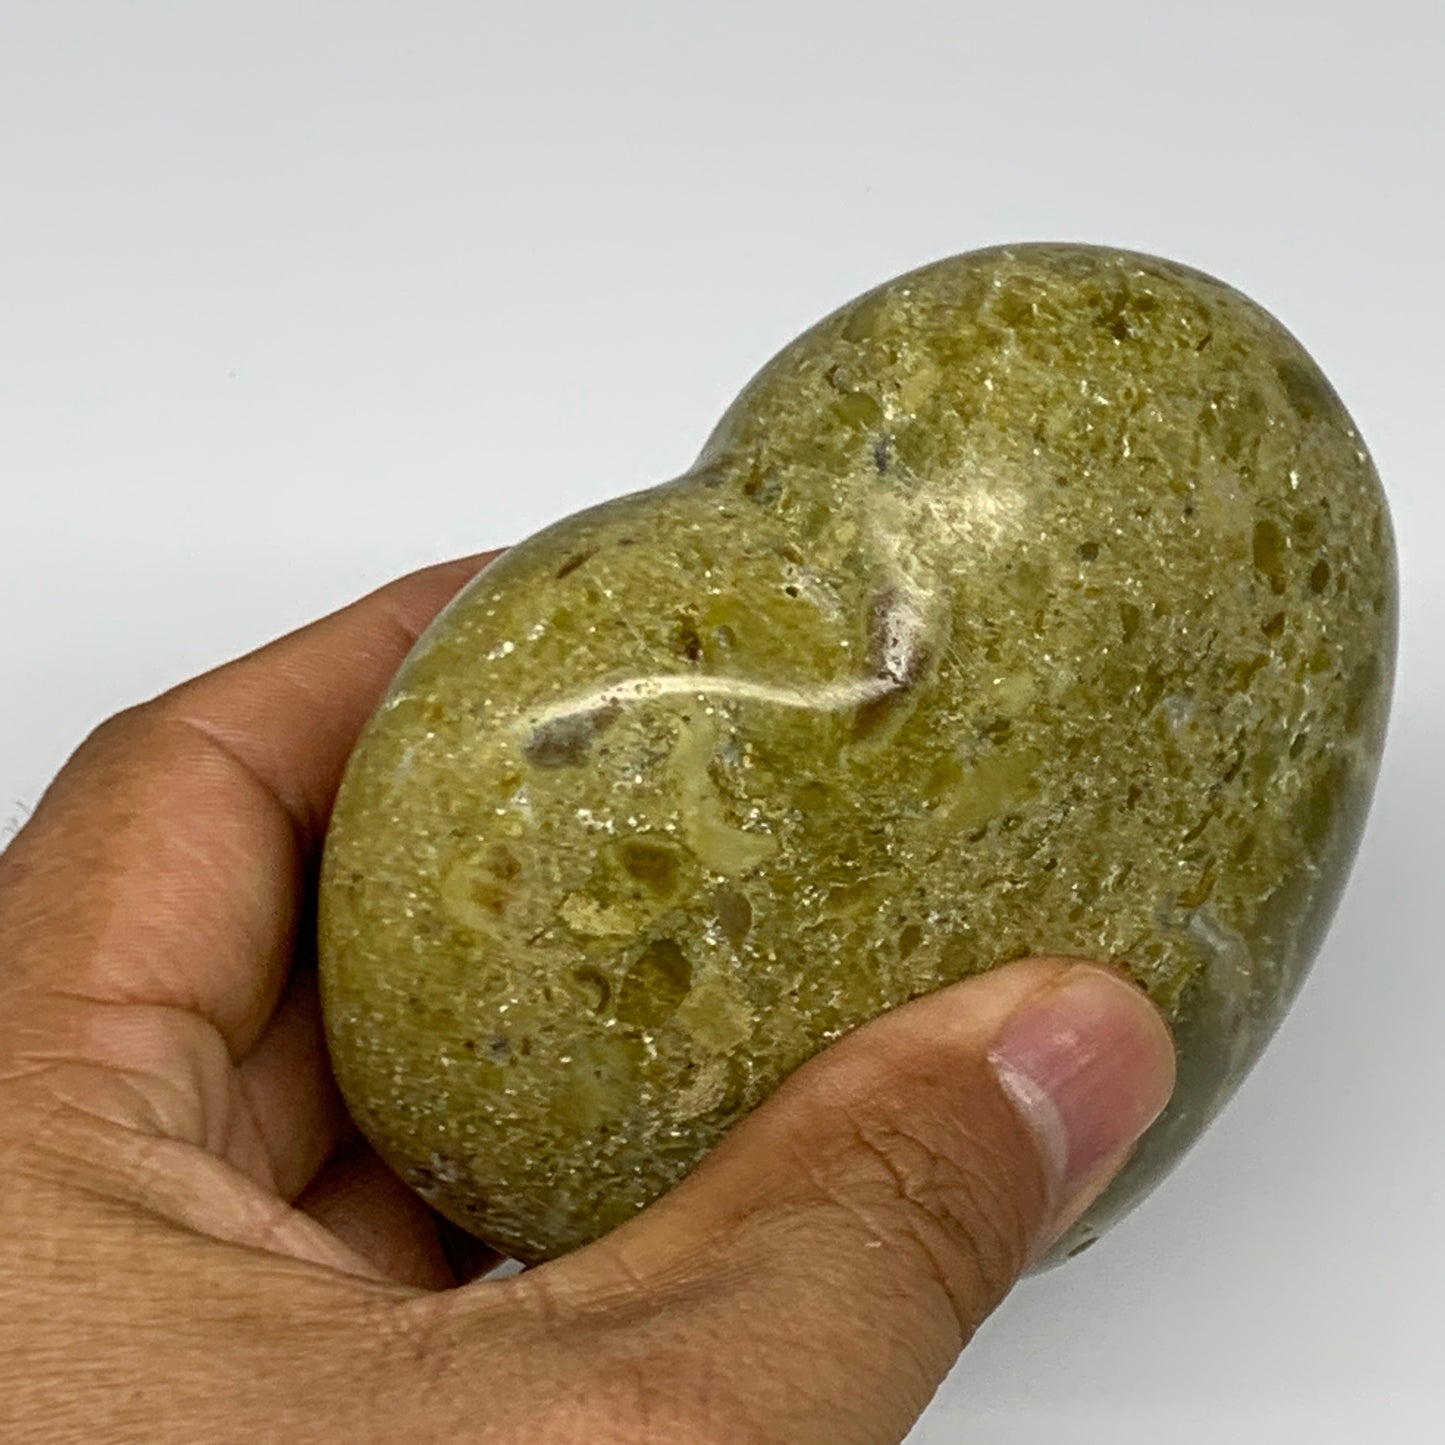 312.7g,3.2"x3.5"x1.6", Green Opal Heart Polished Gemstone @Madagascar, B17571